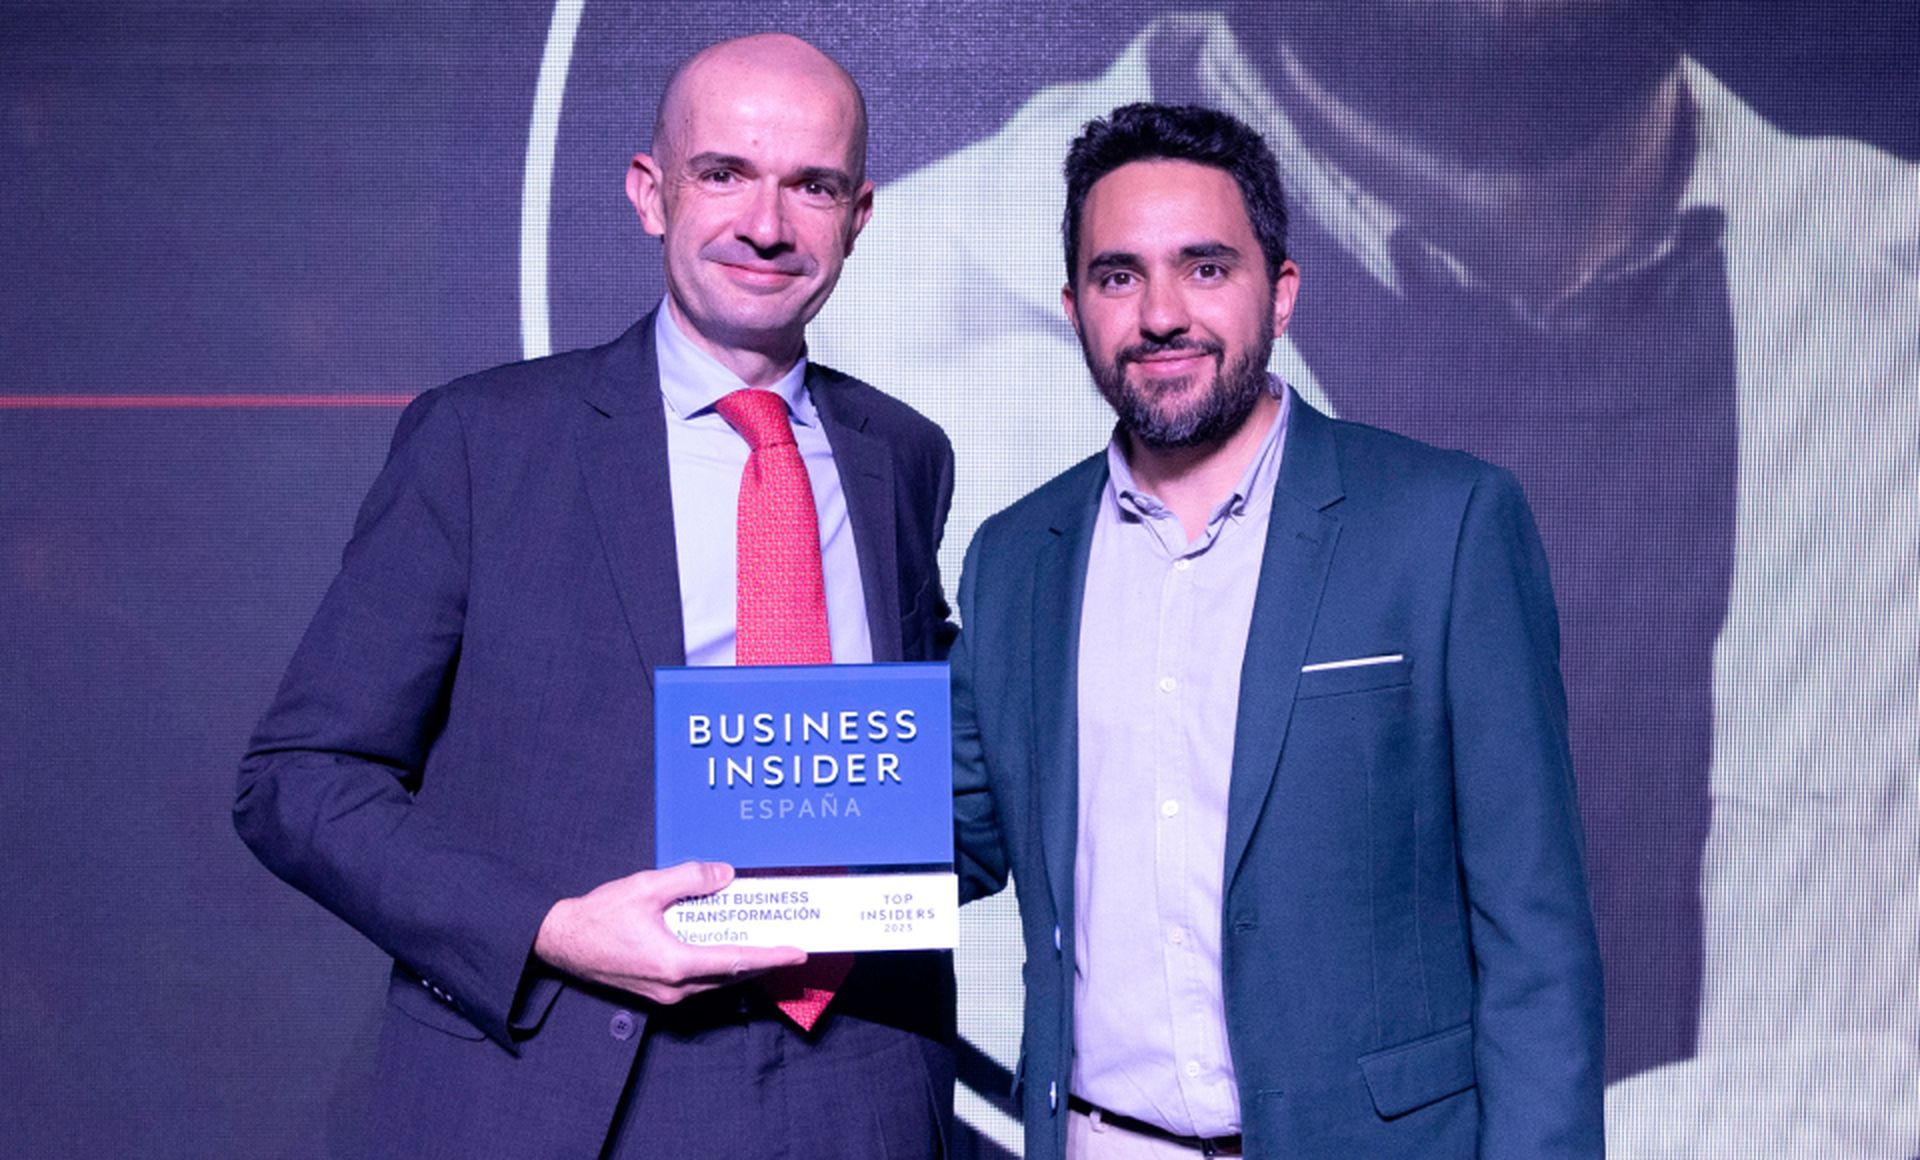 De izquierda a derecha, Gonzalo Herradón, investigador principal del grupo Neurofan de la Universidad CEU-San Pablo, recibe el premio Top Insider del Año en la categoría de Smart Business Transformación de Víctor Pérez, redactor jefe de Business Insider España.